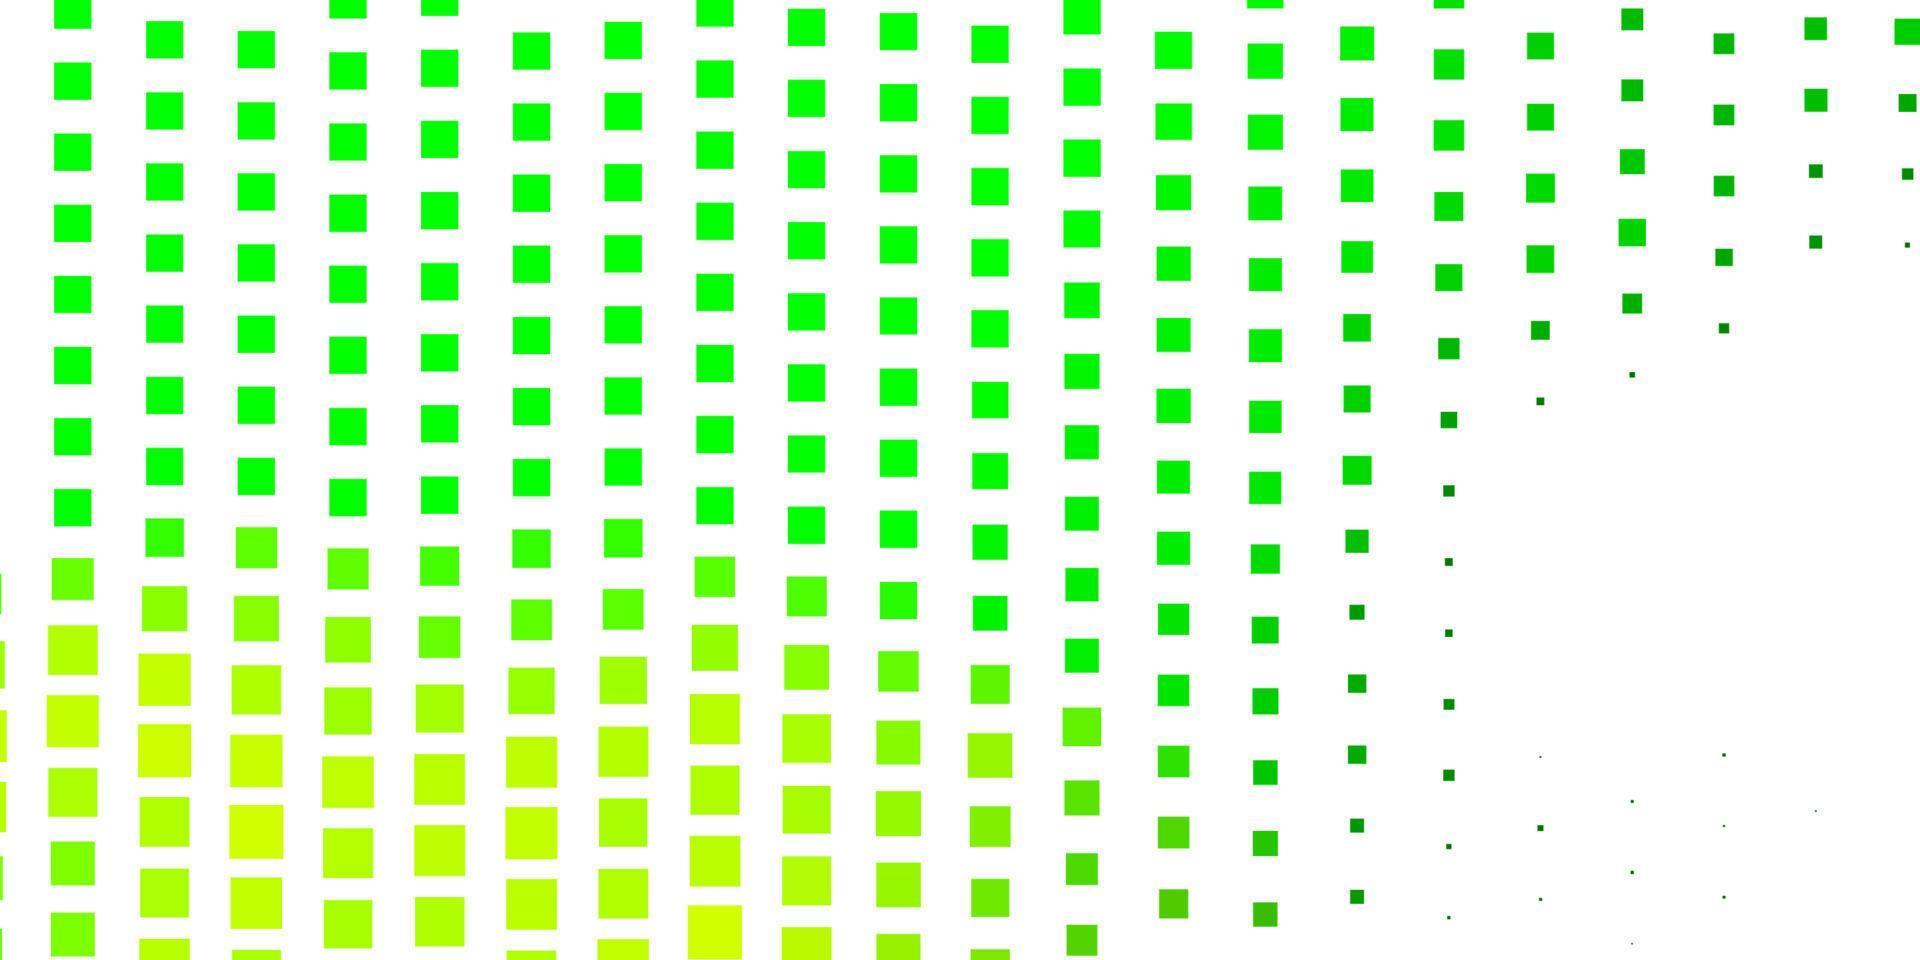 cenário de vetor verde claro com retângulos.